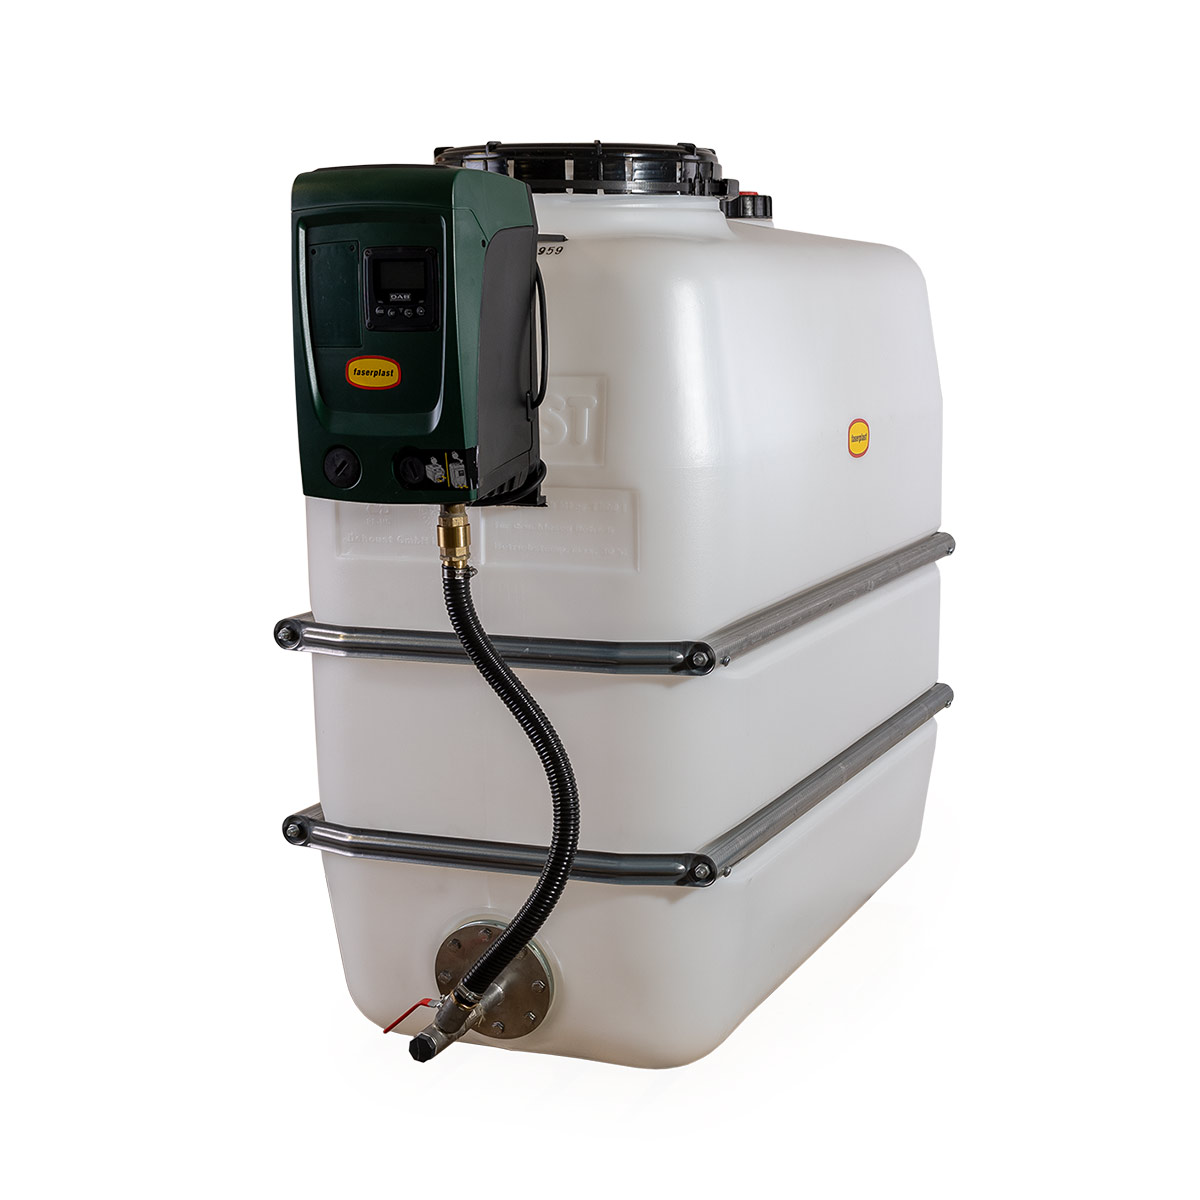 Hauswasseranlage HaWa 1500, mit aufgebauter Pumpe e.sybox mini 3